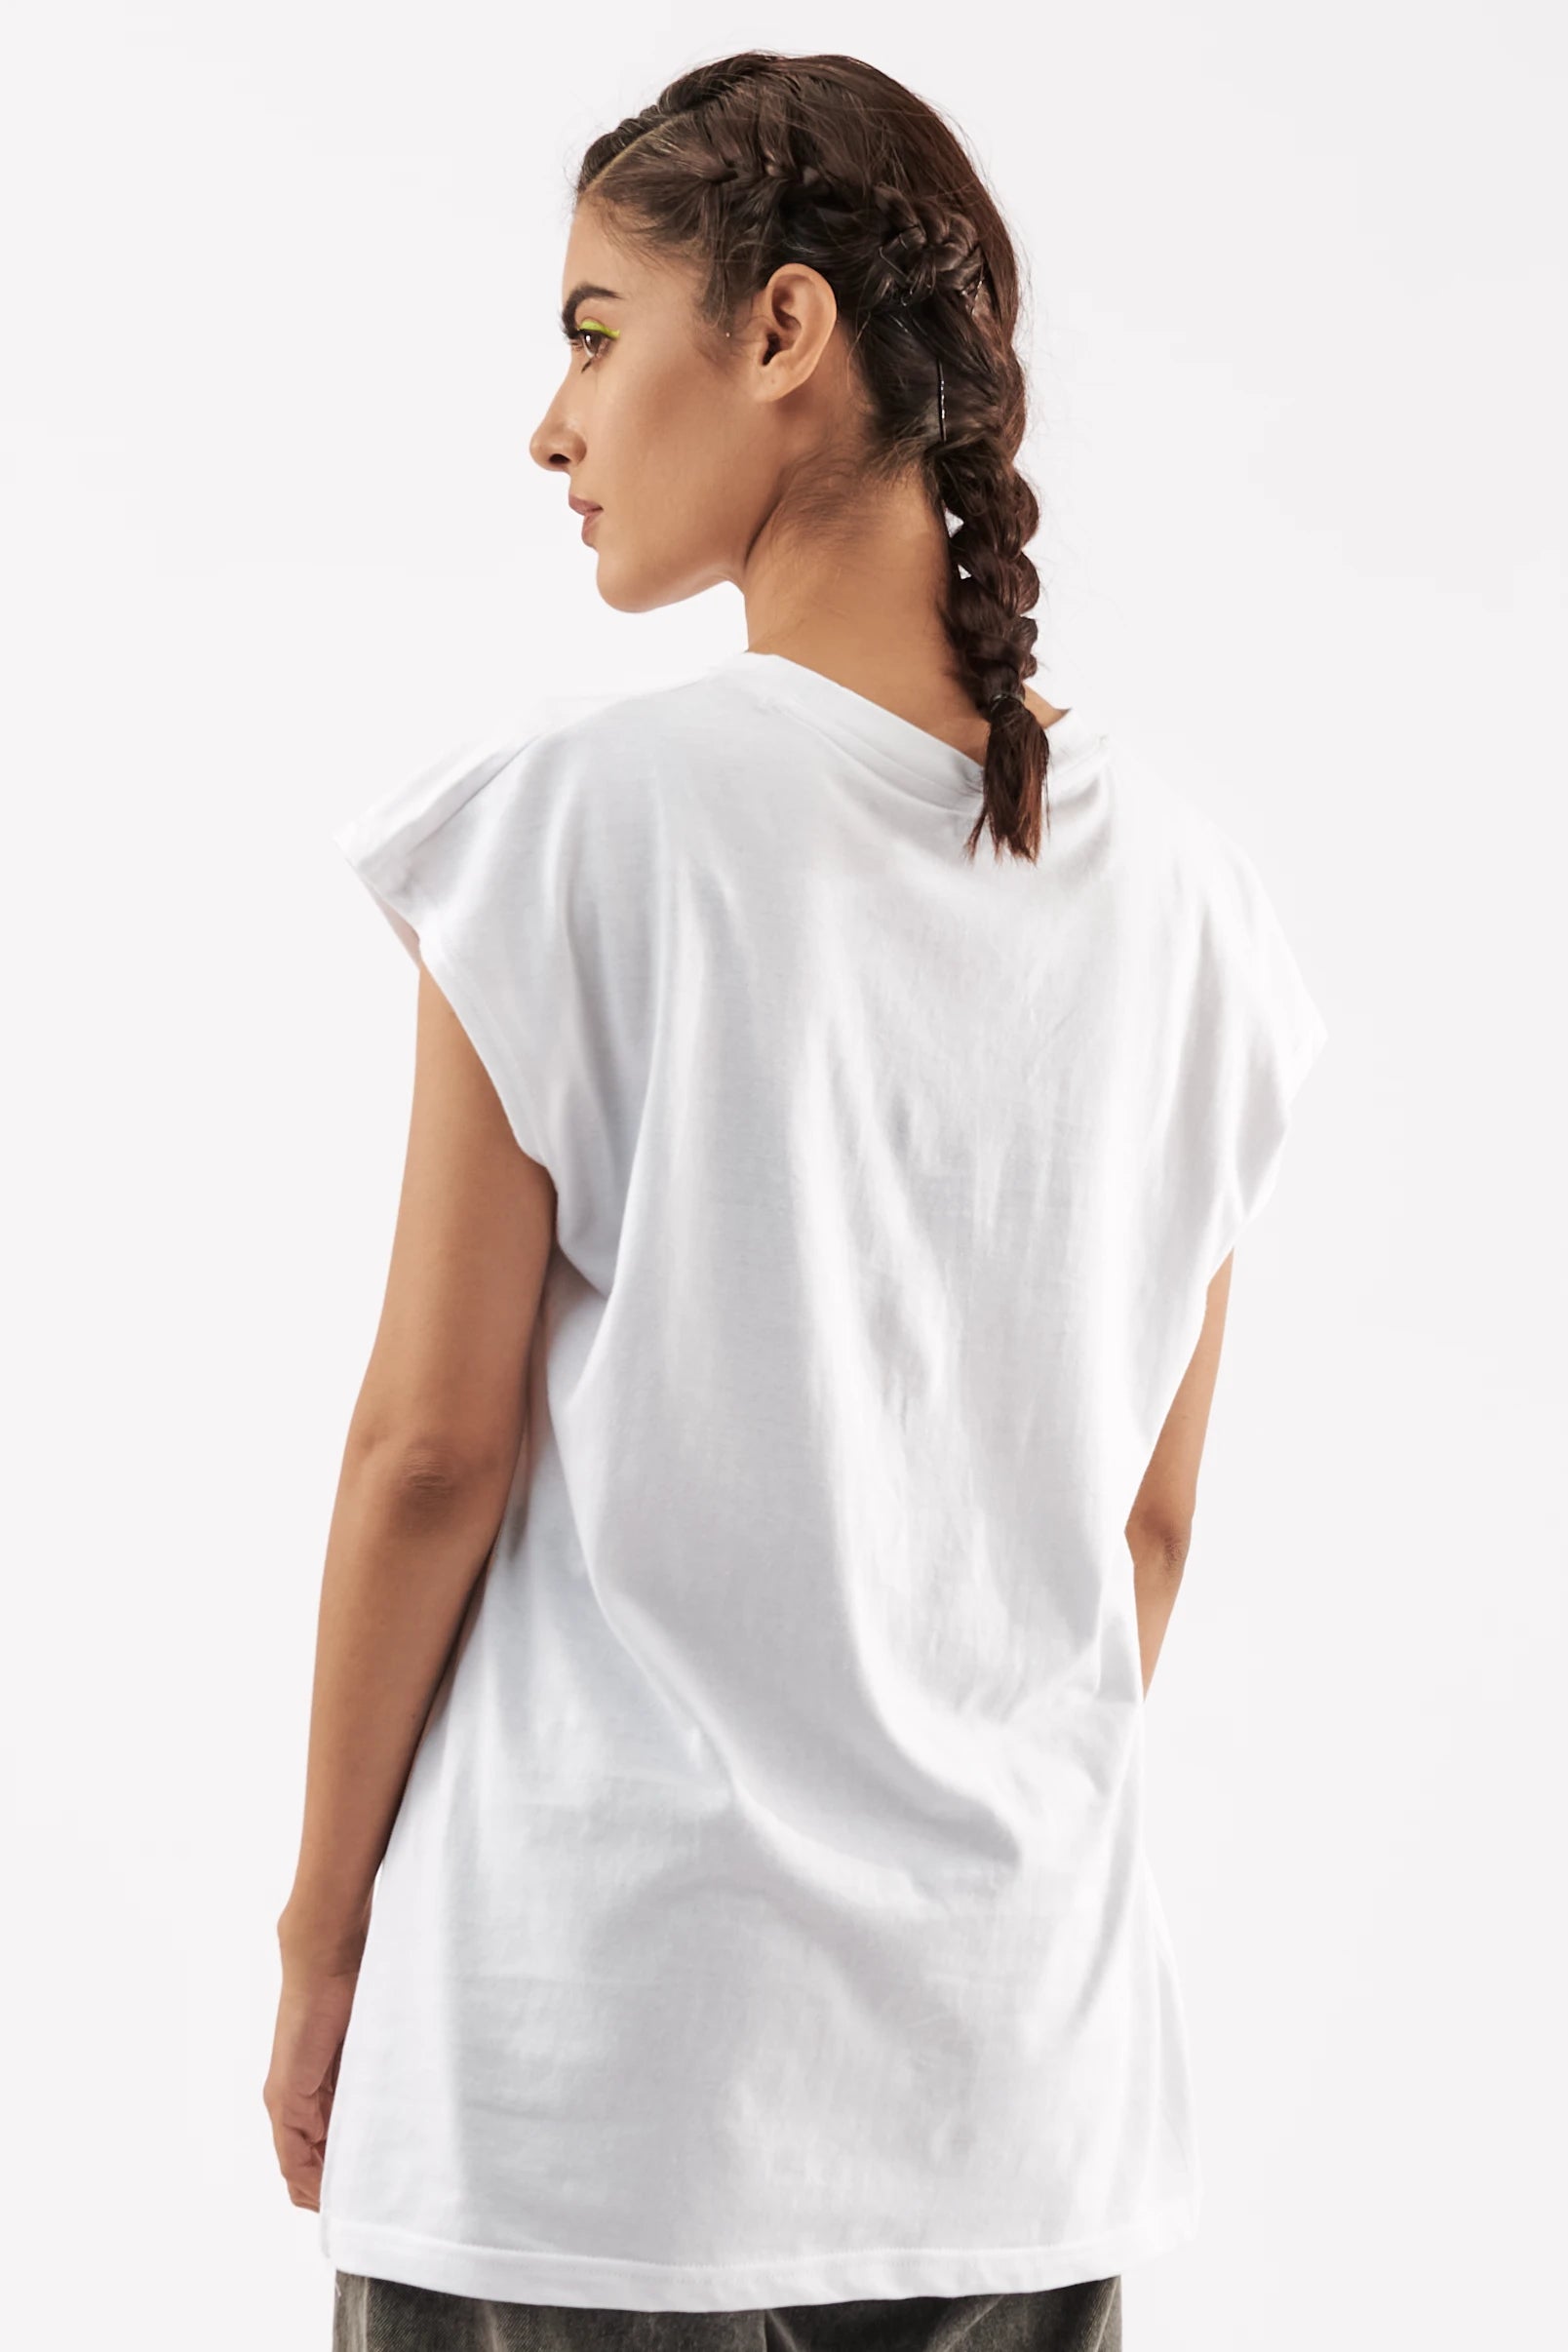 Women's Sleeveless T-Shirt White